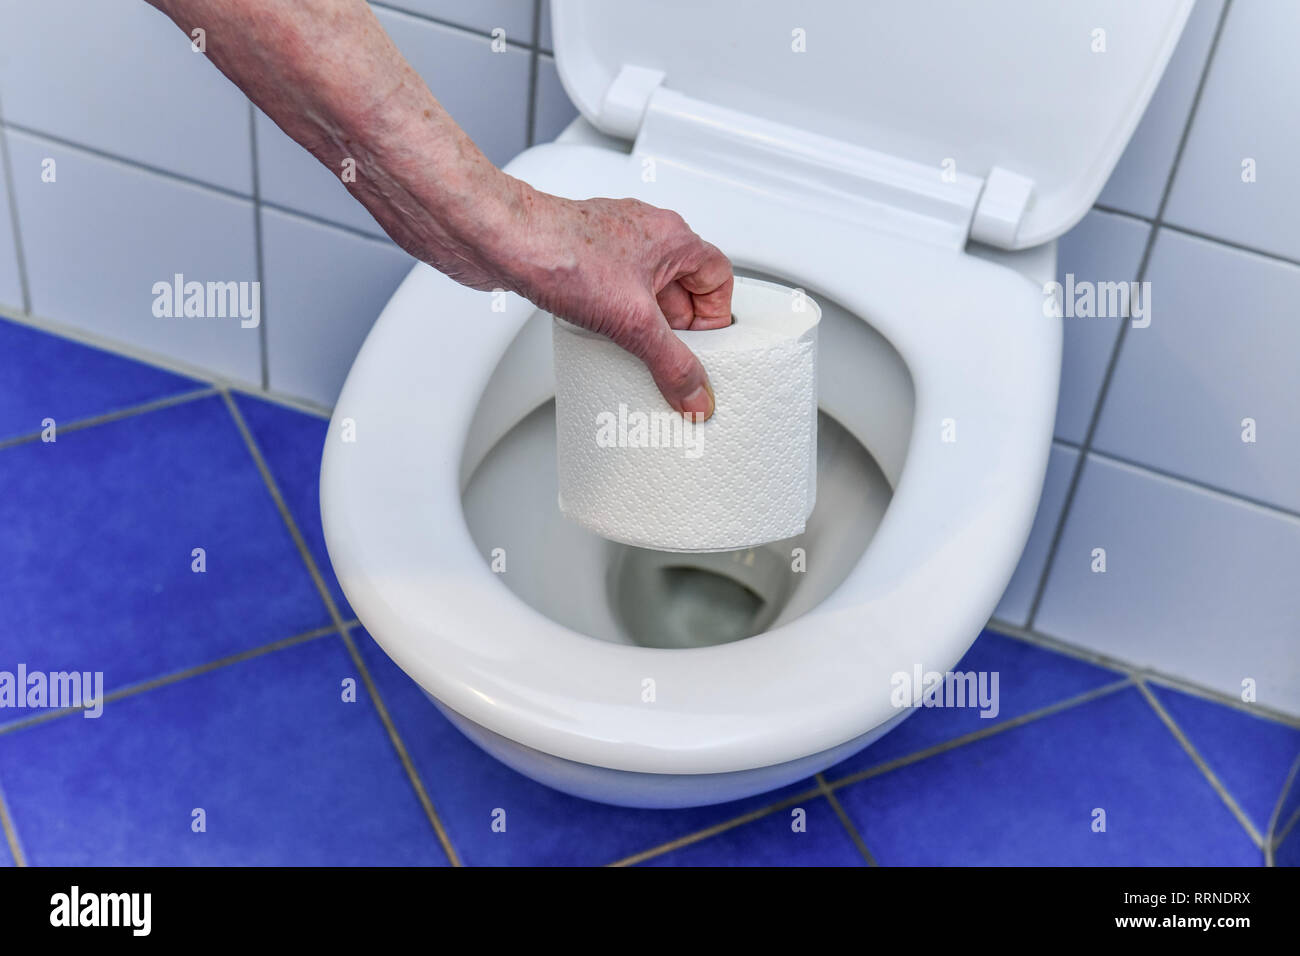 Loo paper, toilet, Klopapier, Toilette Stock Photo